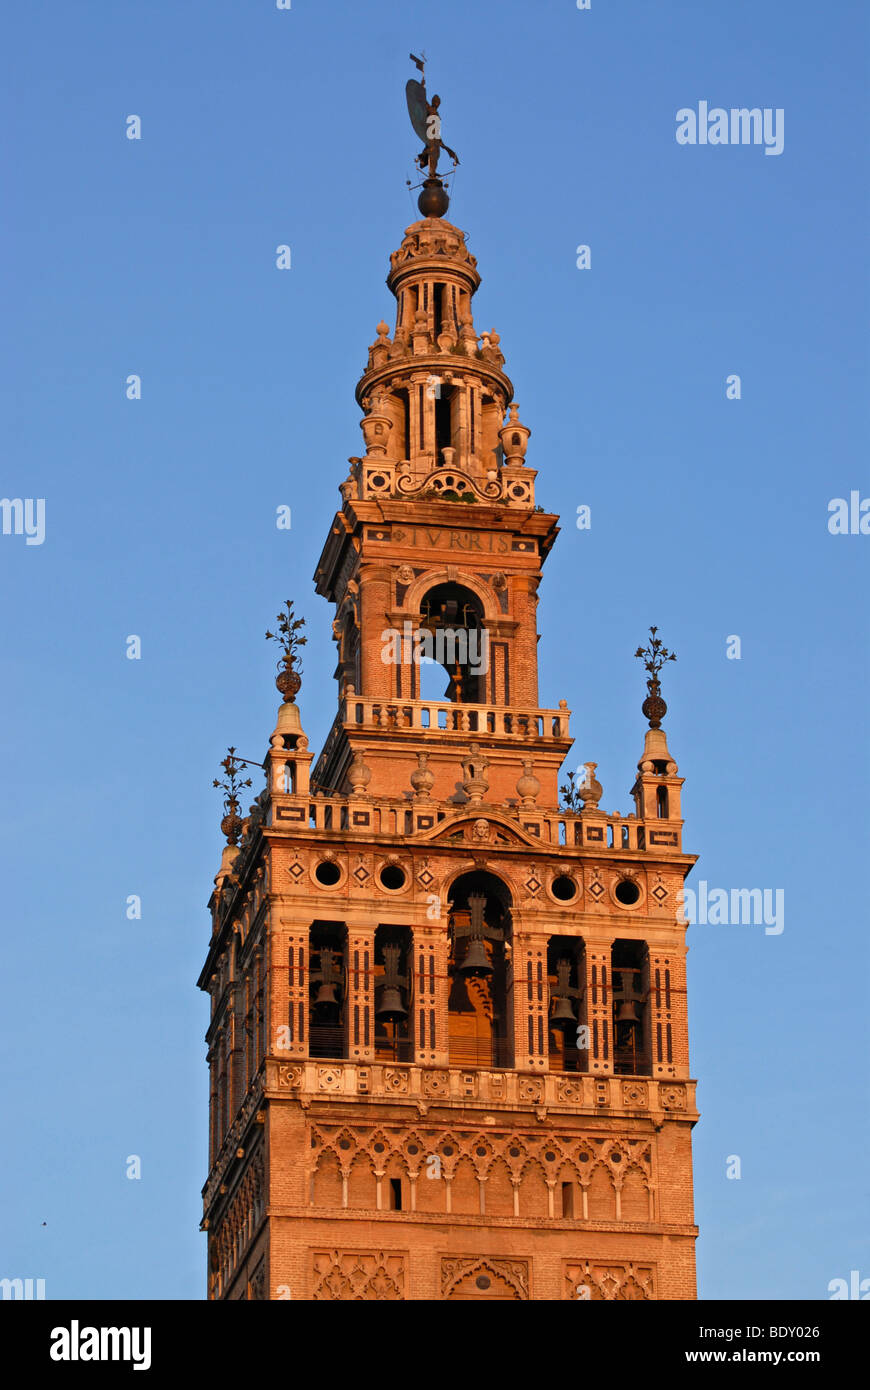 La Giralda, la torre de la Catedral de Sevilla iluminada por la cálida luz matutina, Sevilla, España, Europa Foto de stock